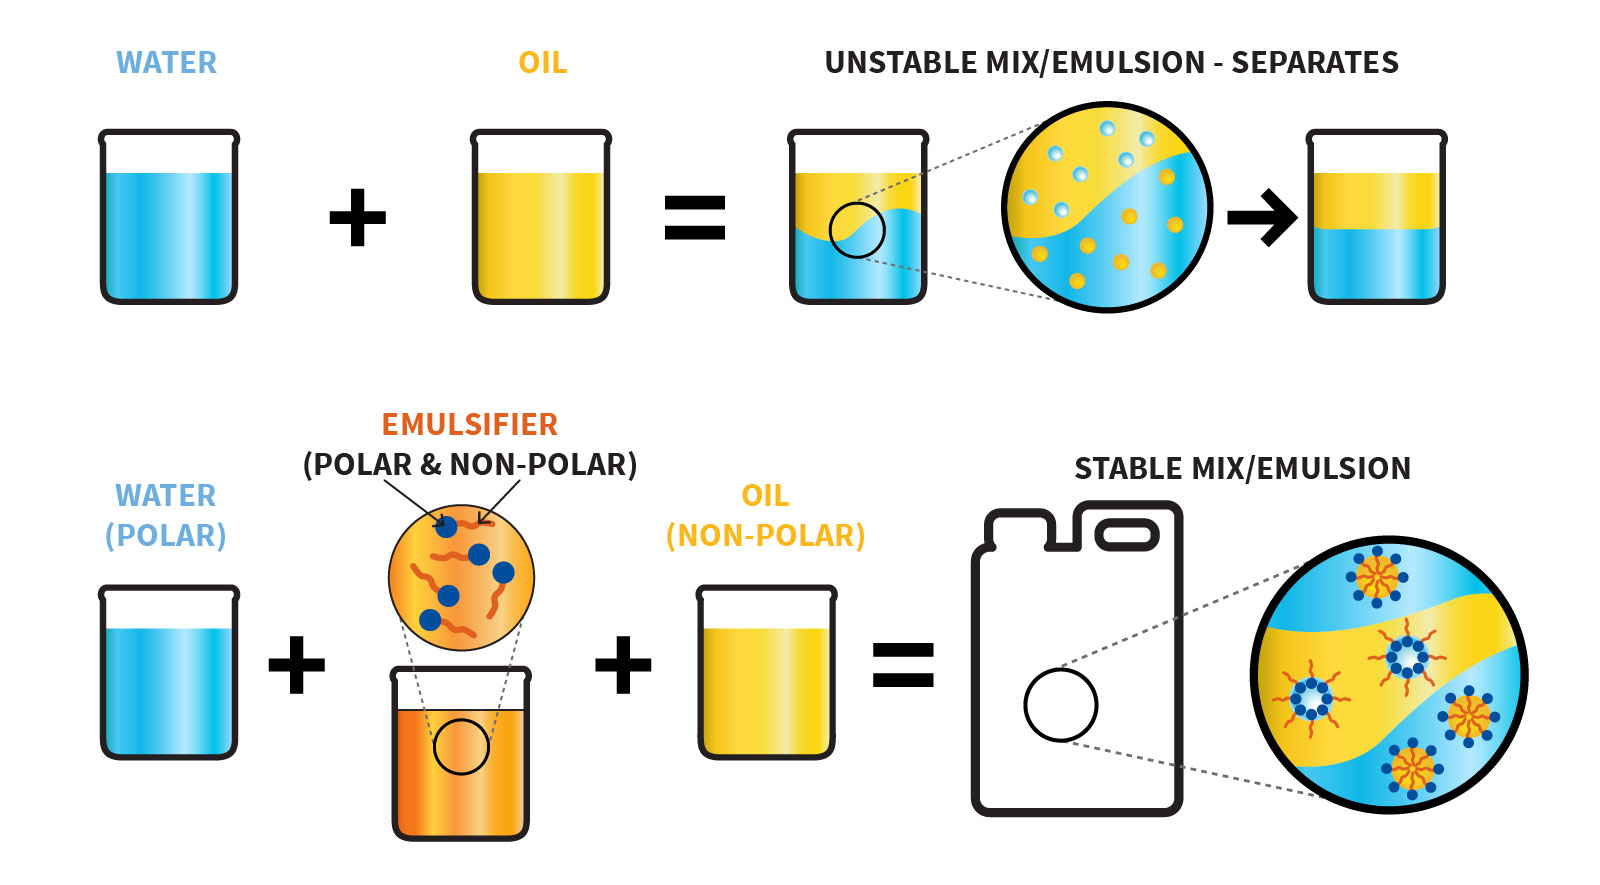 oil + water = unstable emulsion, oil + water + emulsifier = stable emulsion